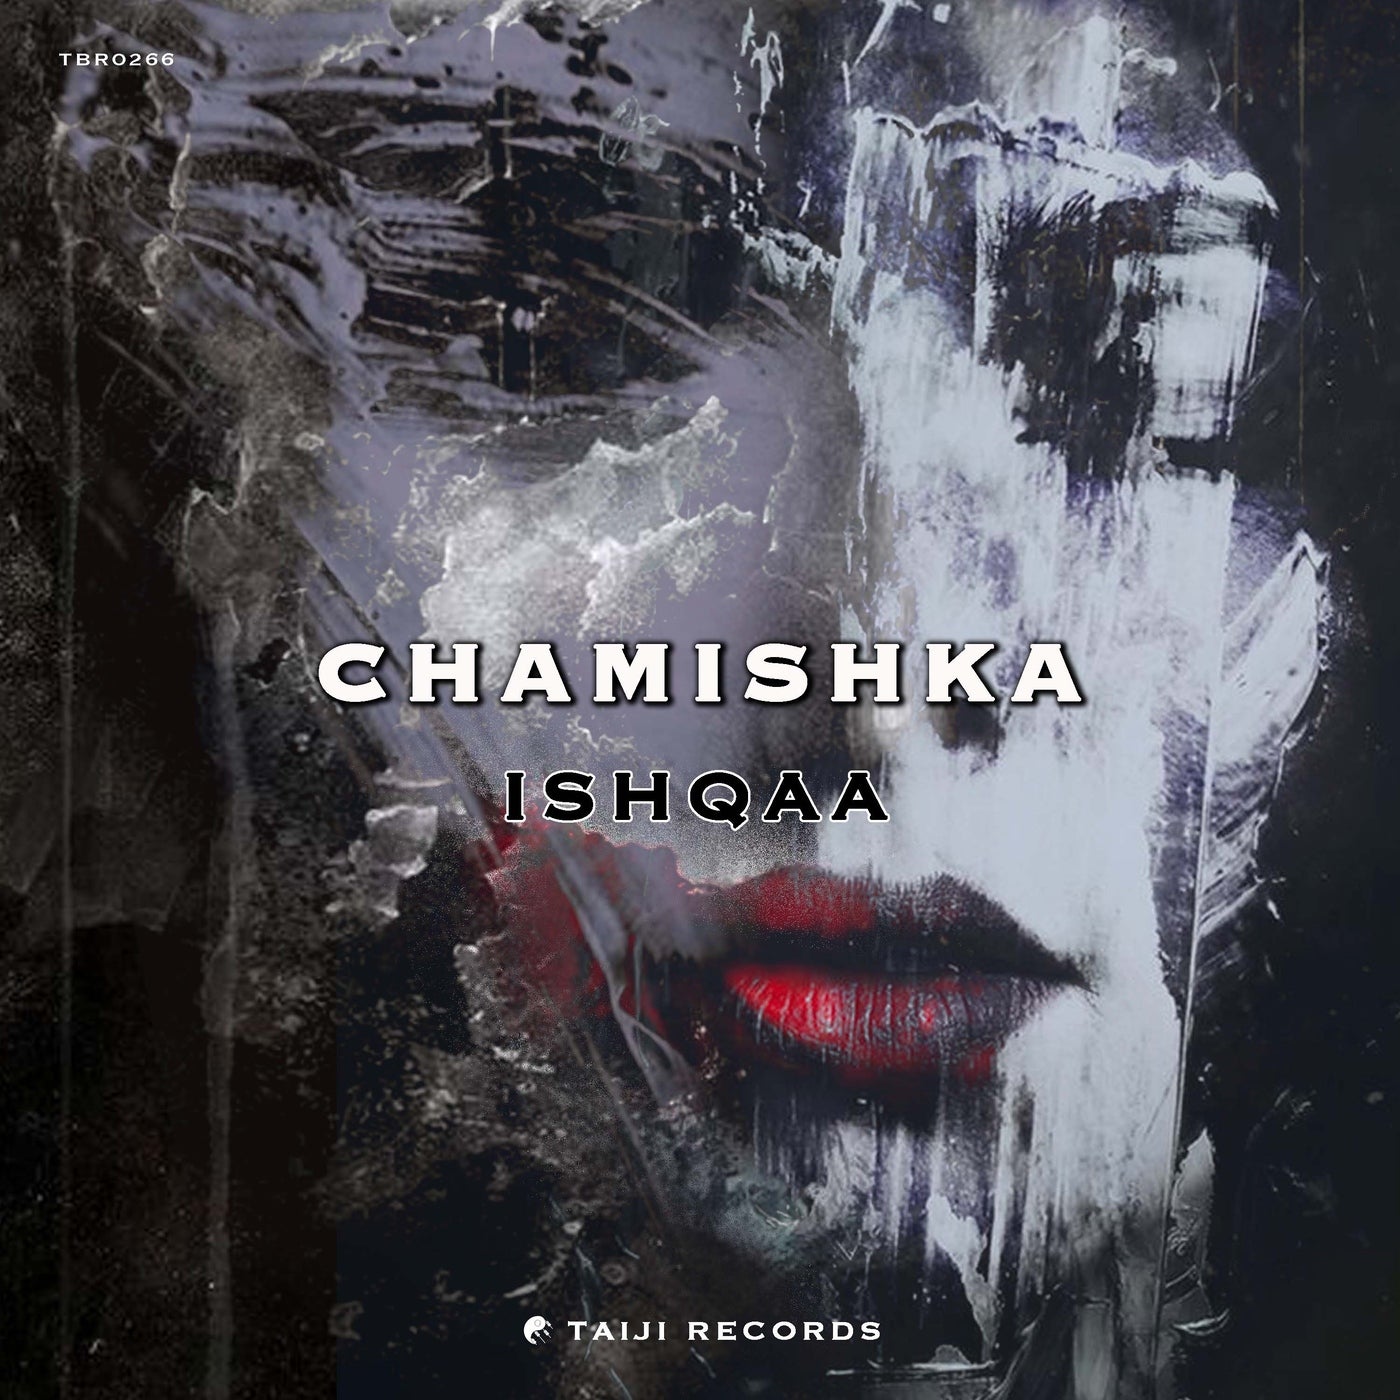 Chamishka – Ishqaa [TBR0266]